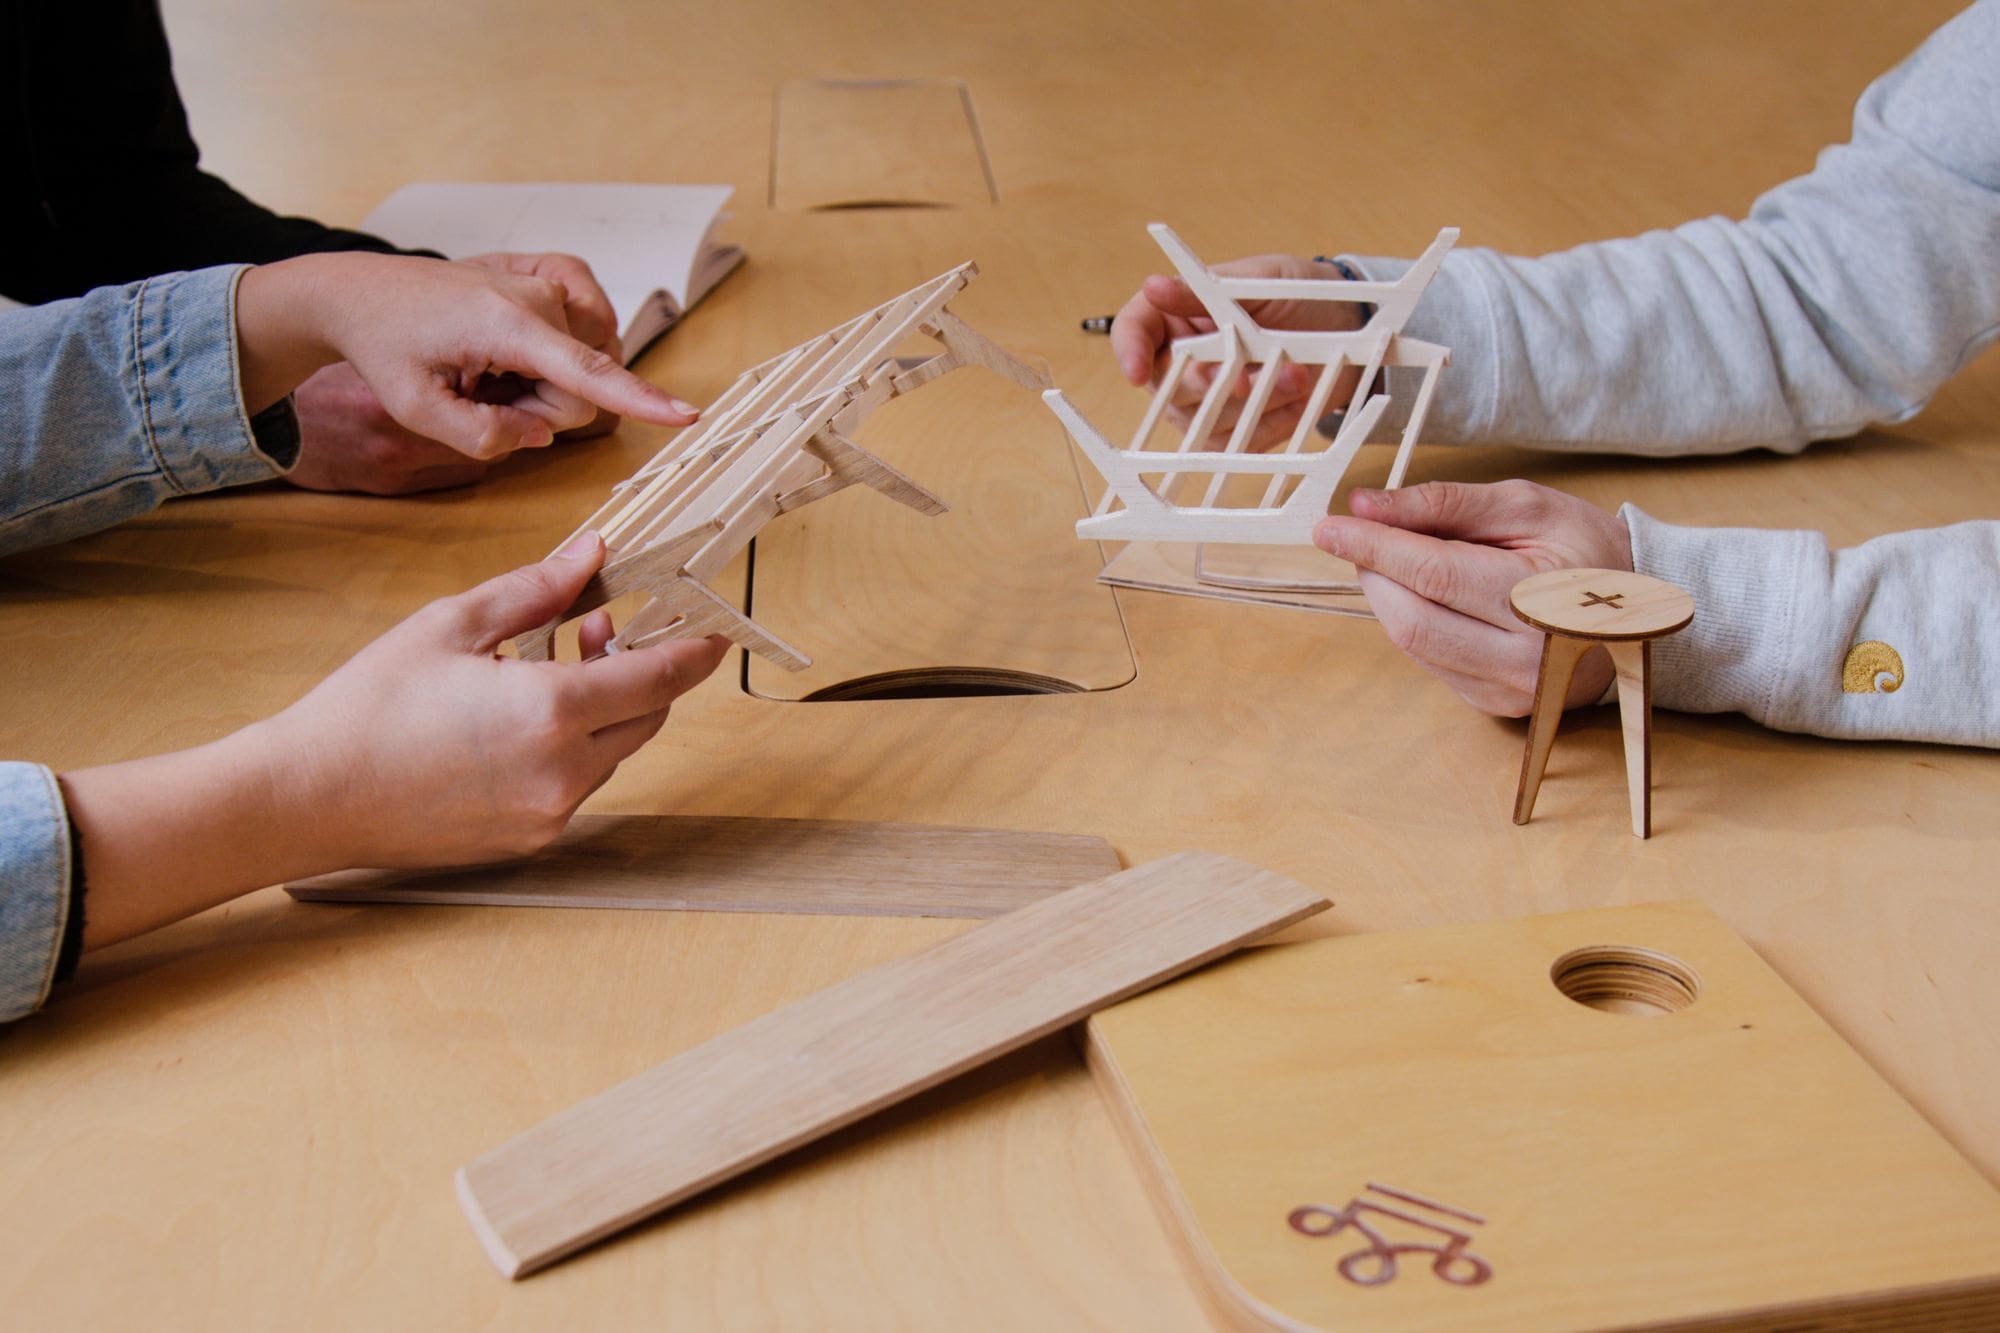 mains de trois personnes qui touchent des maquettes et échantillons en bois sur une table en bois claire